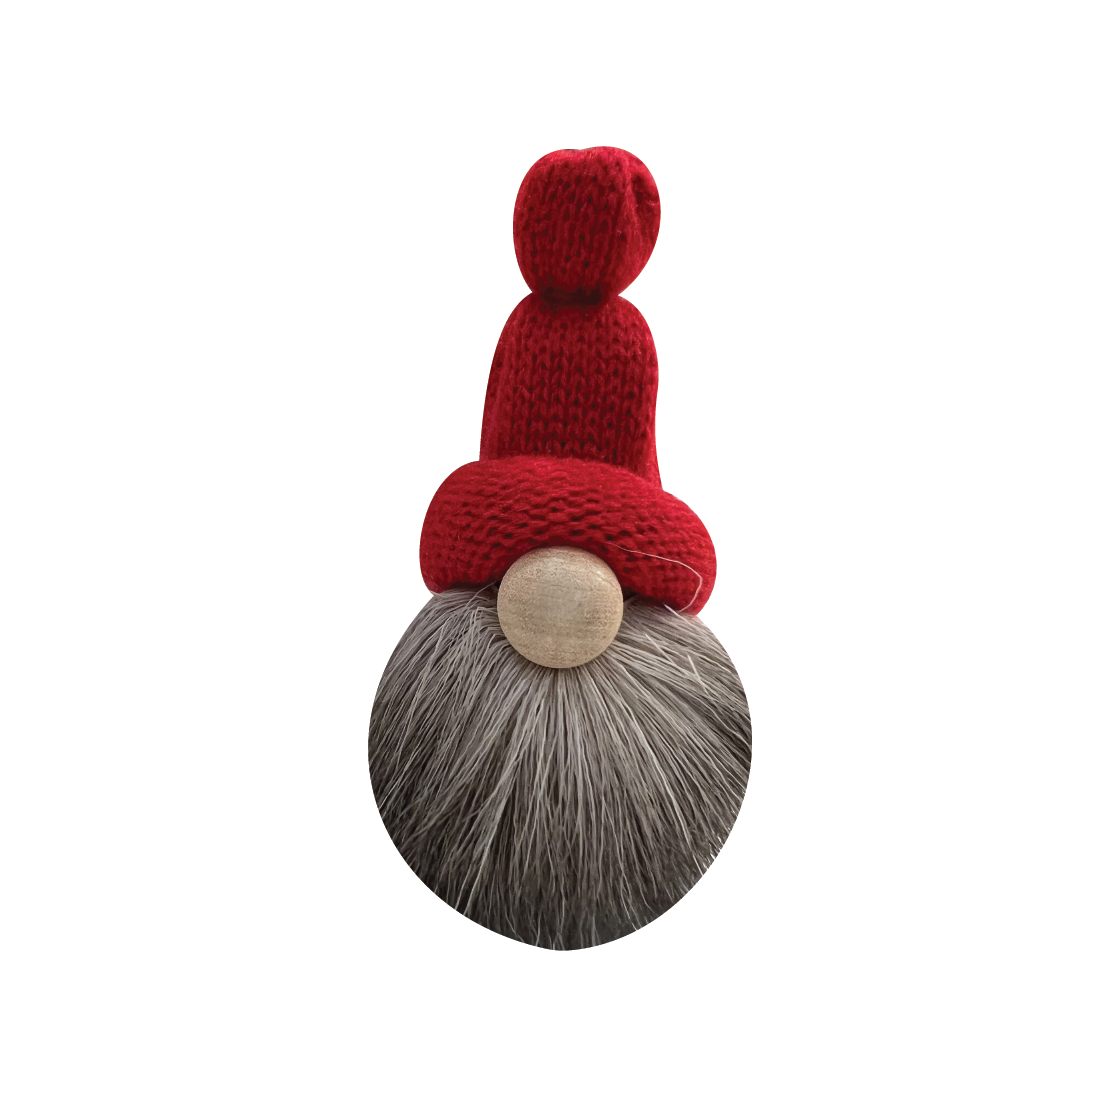 Tomte - Reindeer Beard & Knit Hat, 3" tall